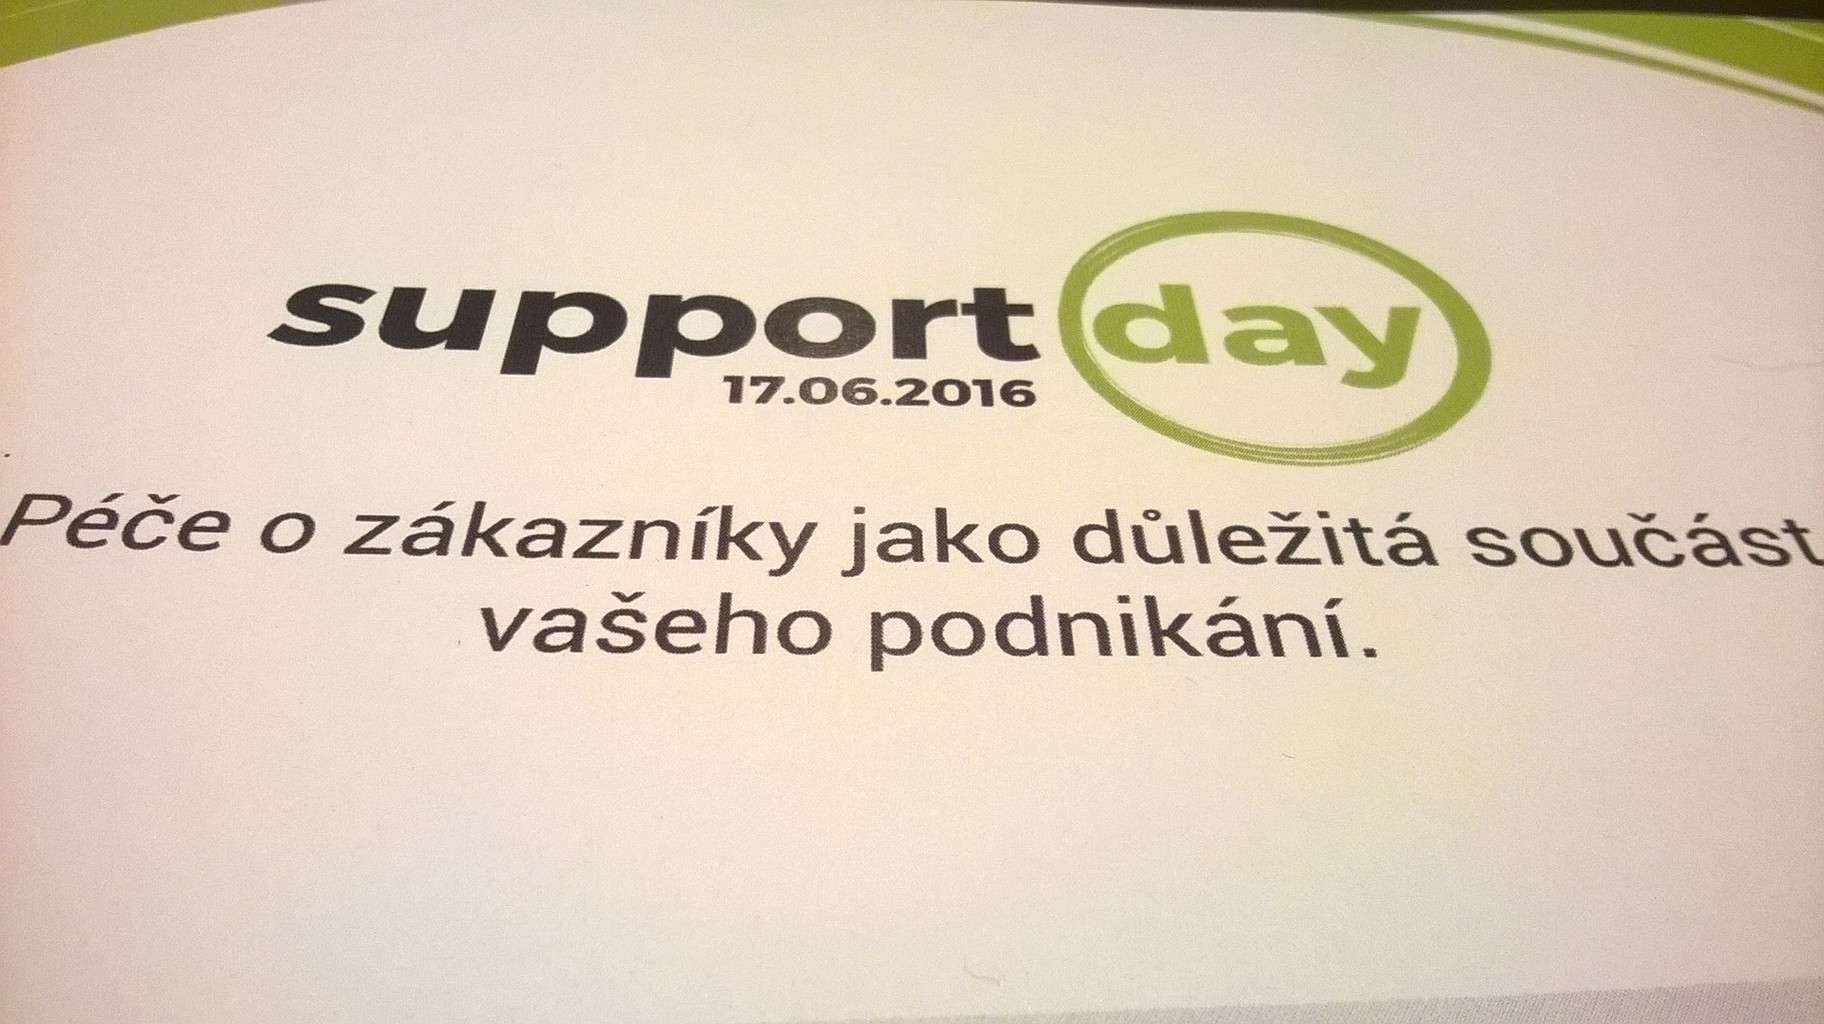 Jaká byla konference SupportDay věnovaná péči o zákazníky